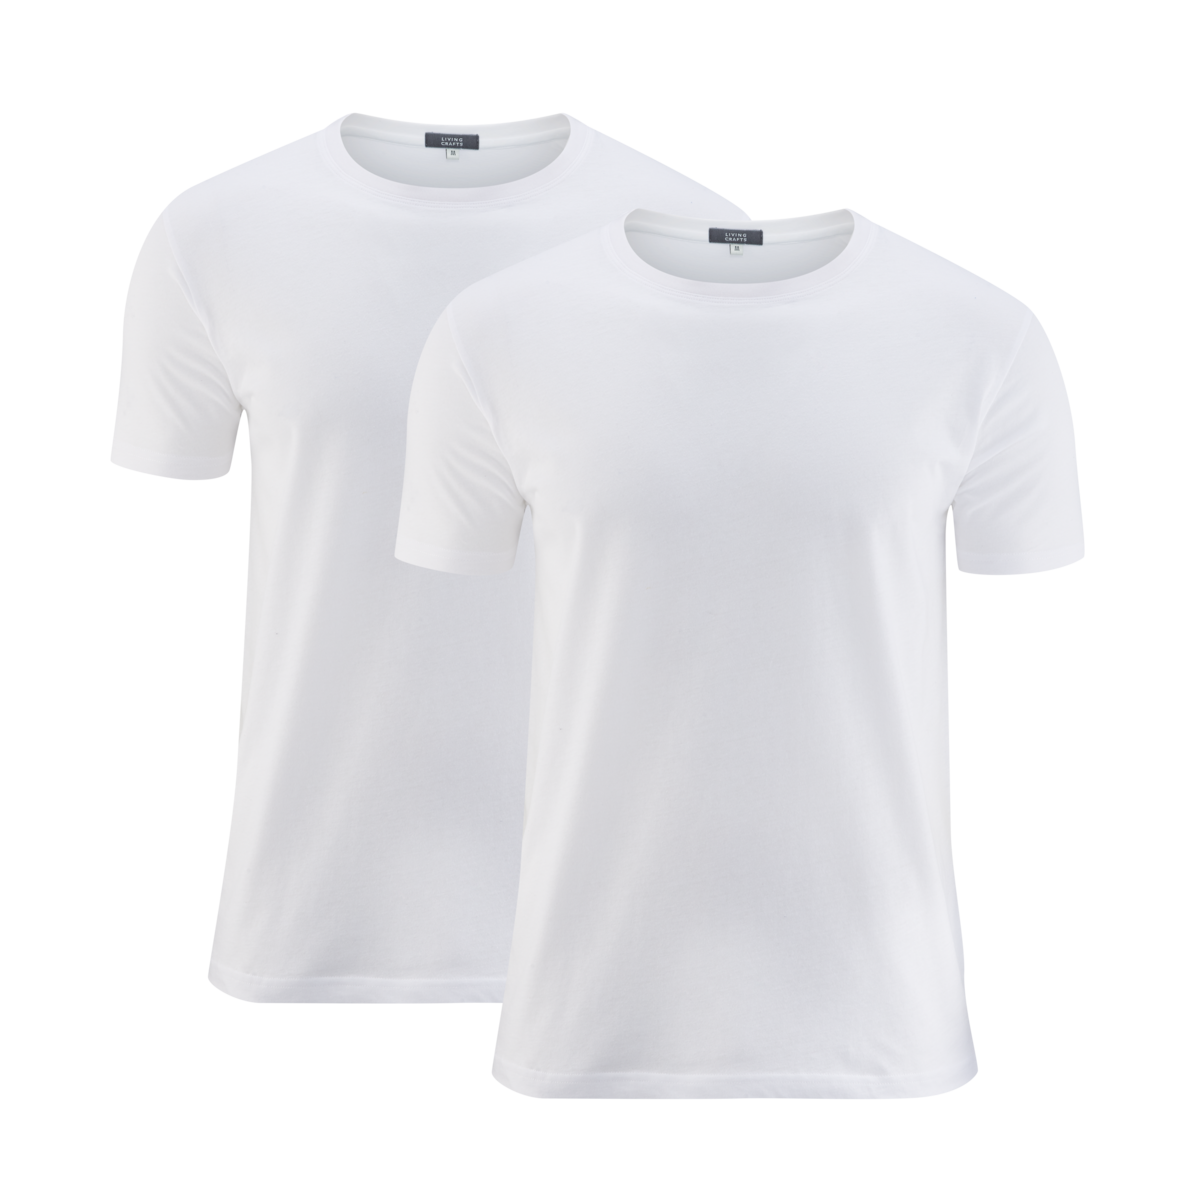 Blanc T-shirt, lot de 2, FABIAN